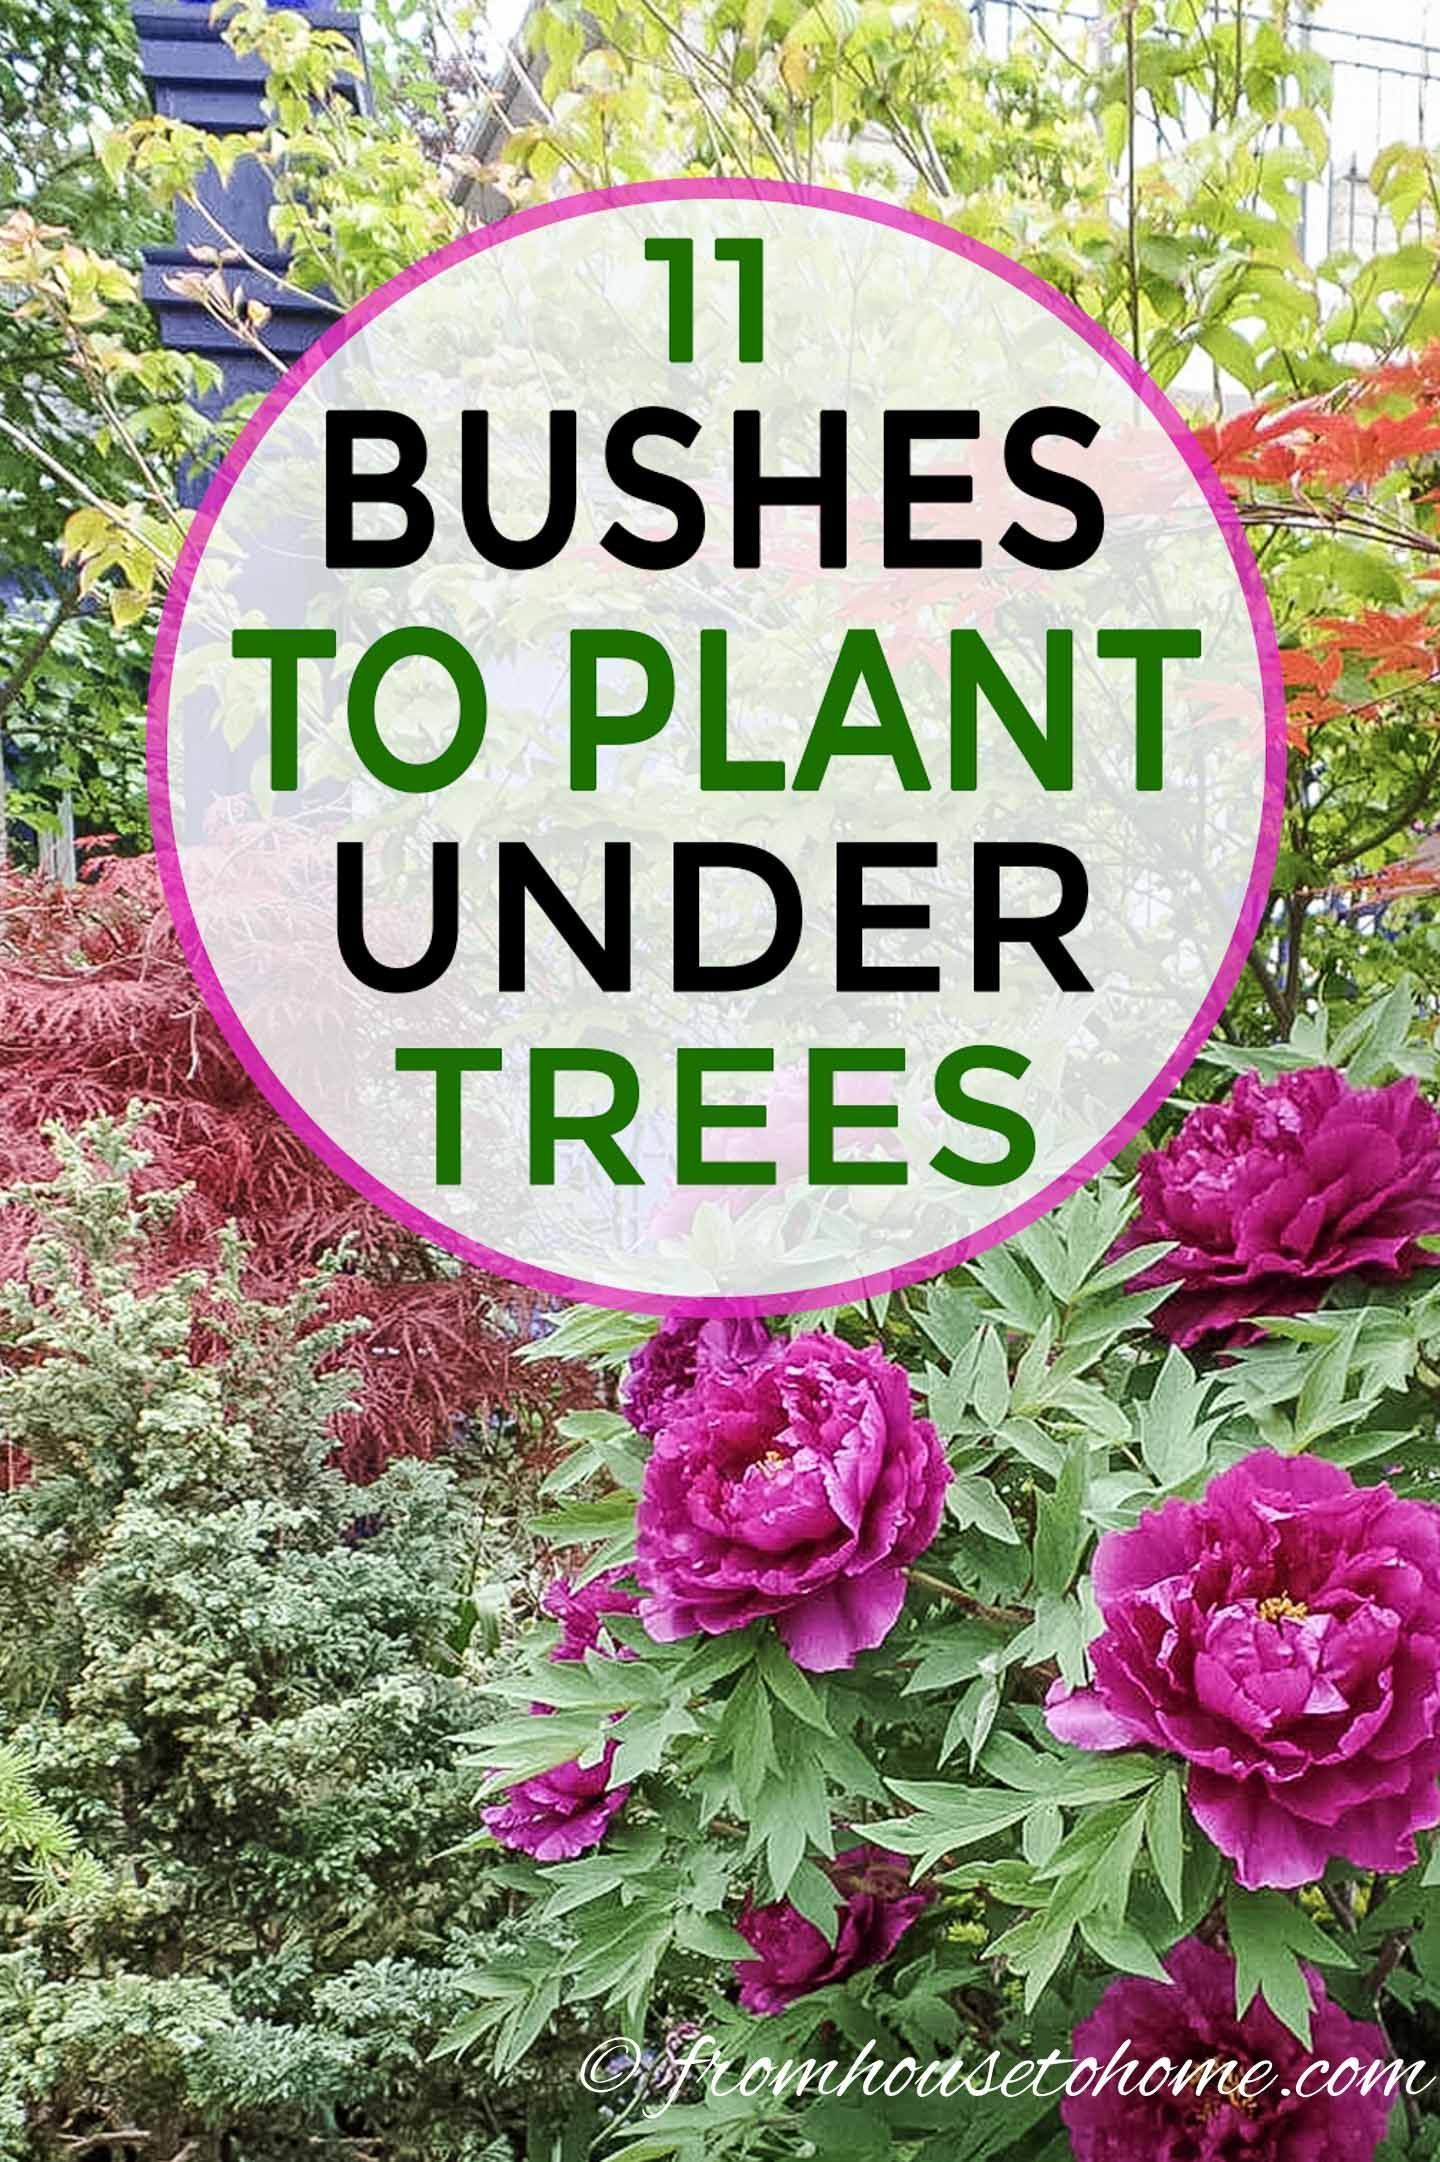 17 plants Green backyards ideas